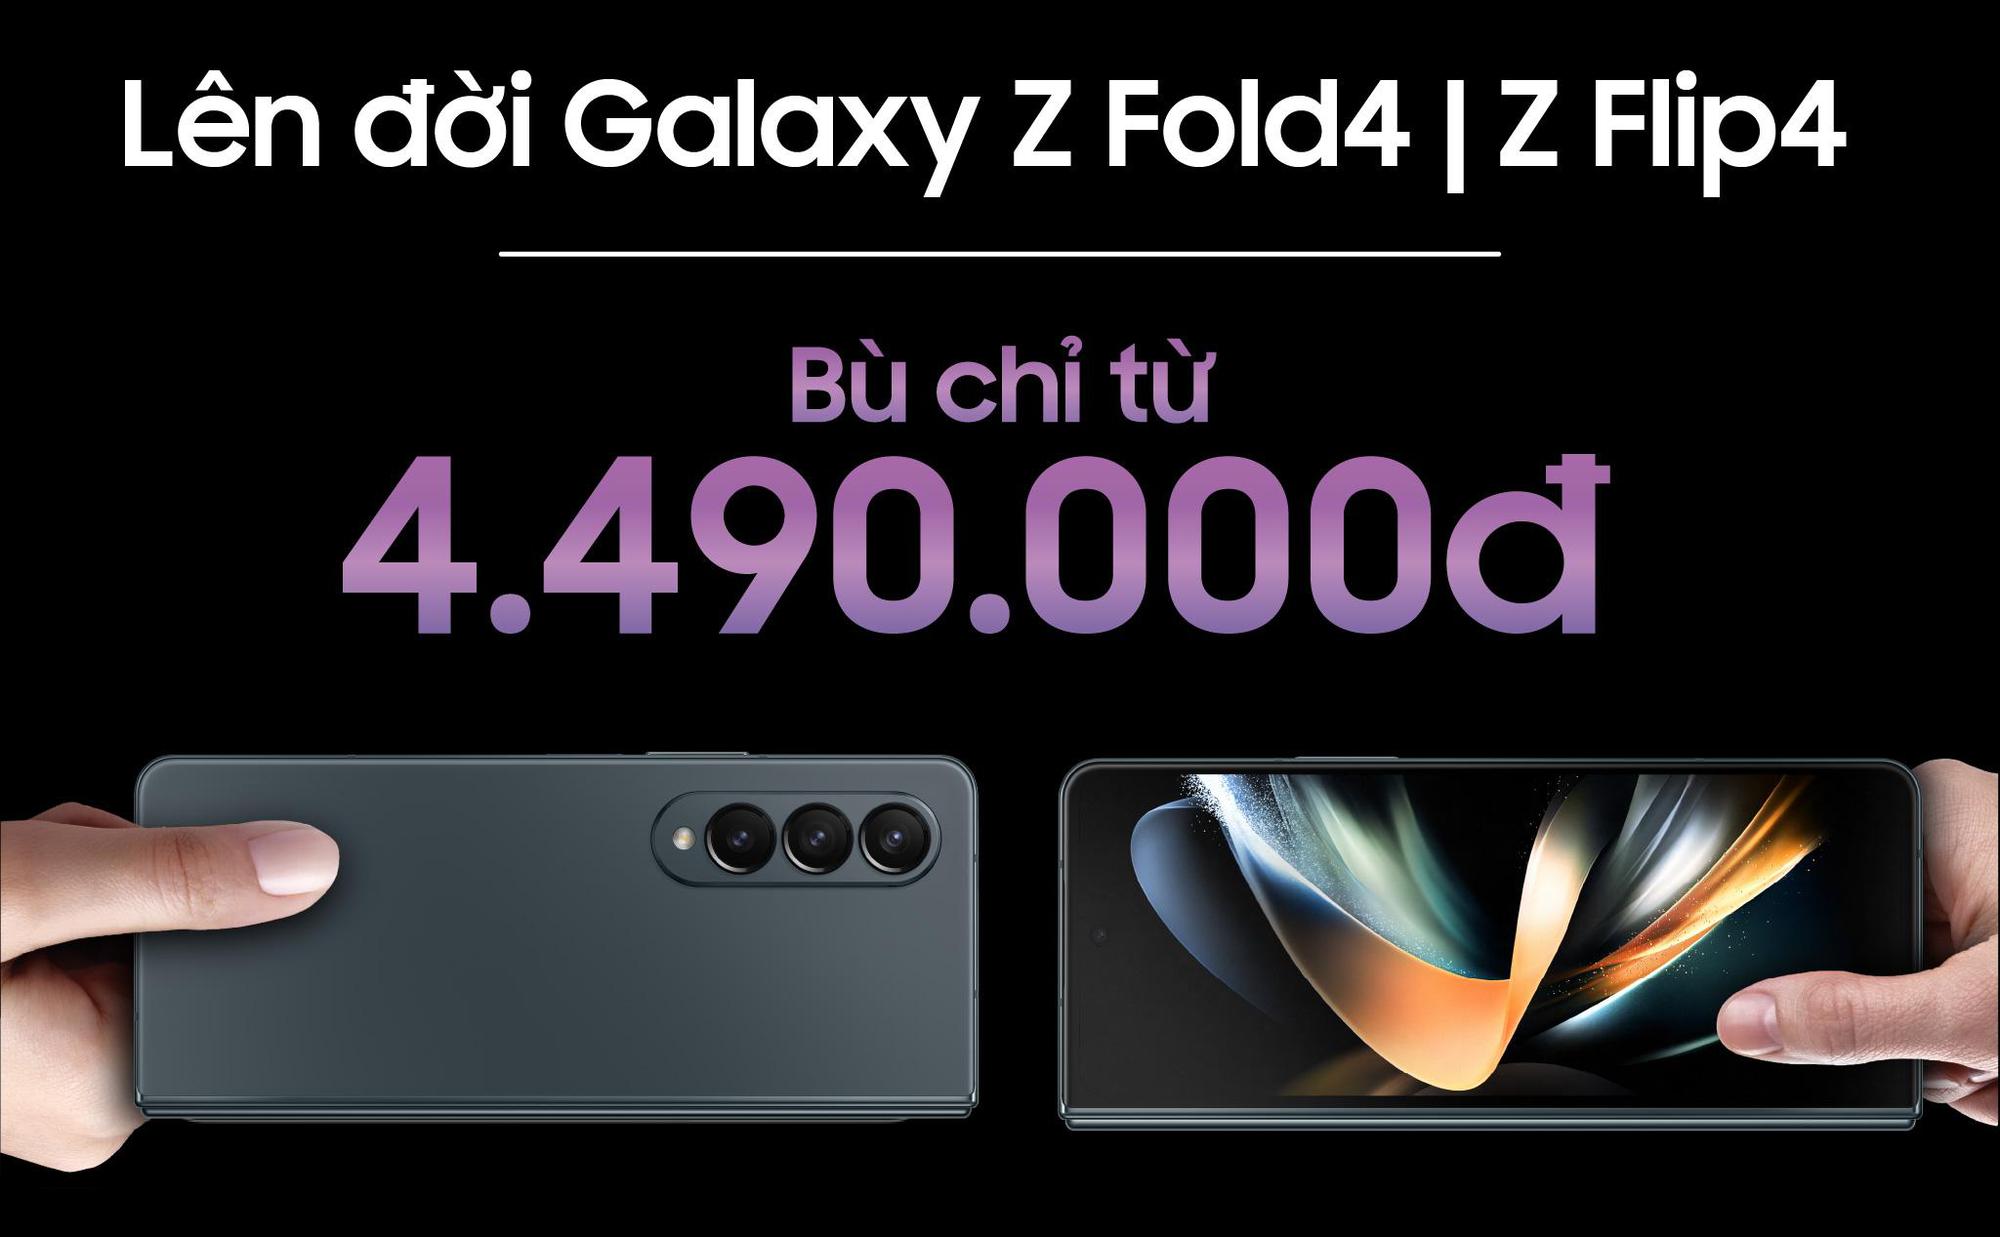 Lên đời Samsung Galaxy Z Fold4 và ZFlip4 chỉ bù từ 4,49 triệu đồng - Ảnh 1.